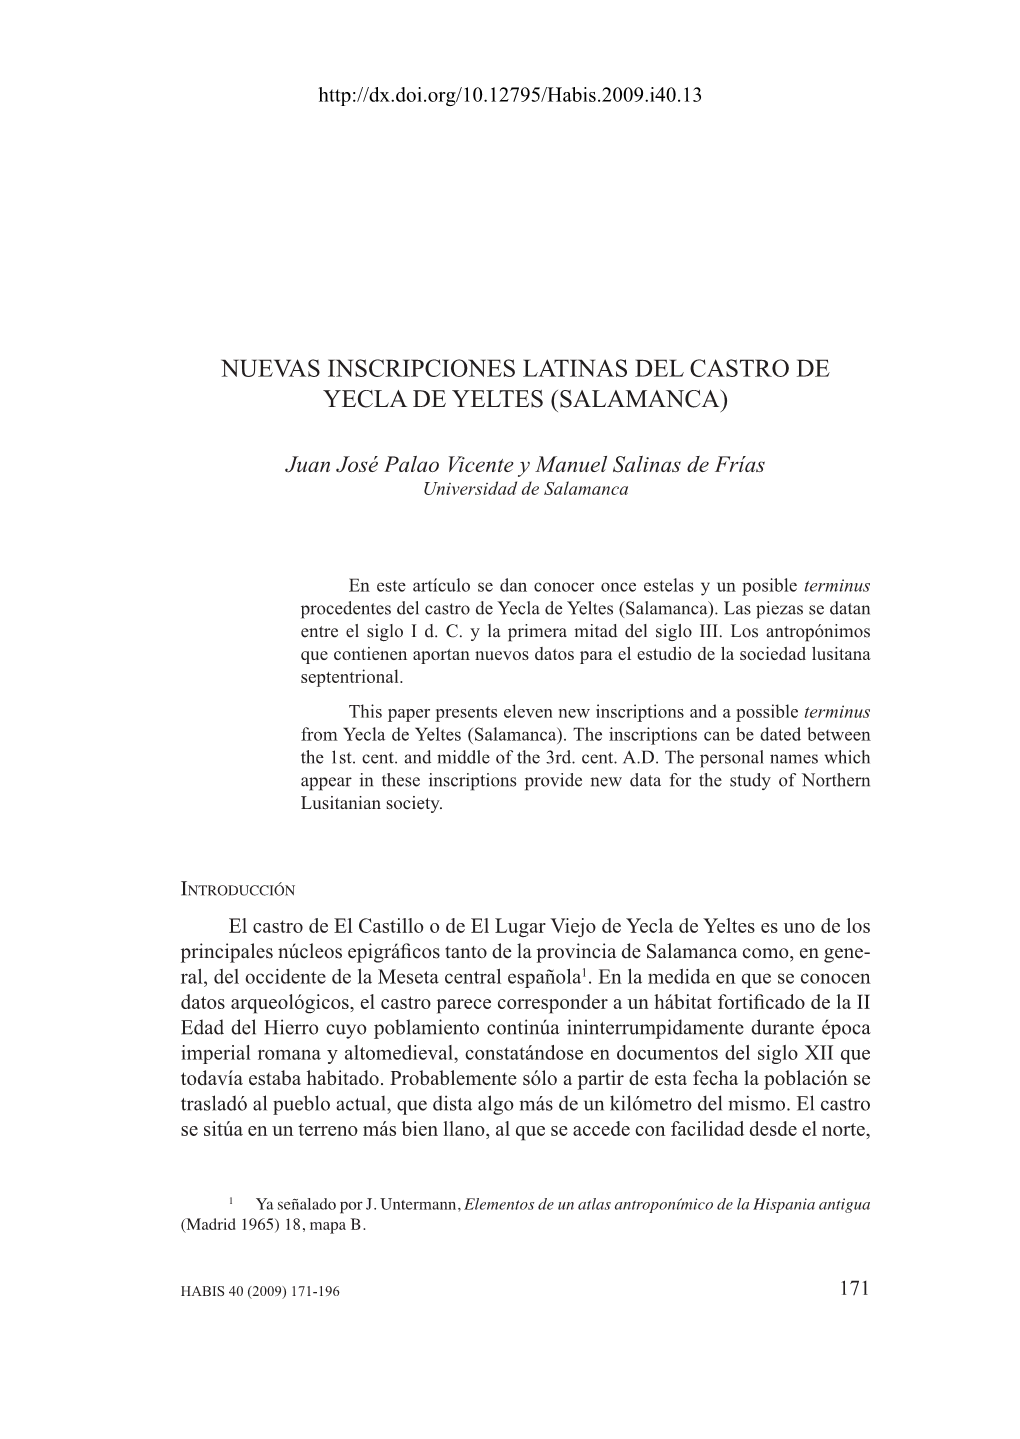 Nuevas Inscripciones Latinas Del Castro De Yecla De Yeltes (Salamanca)